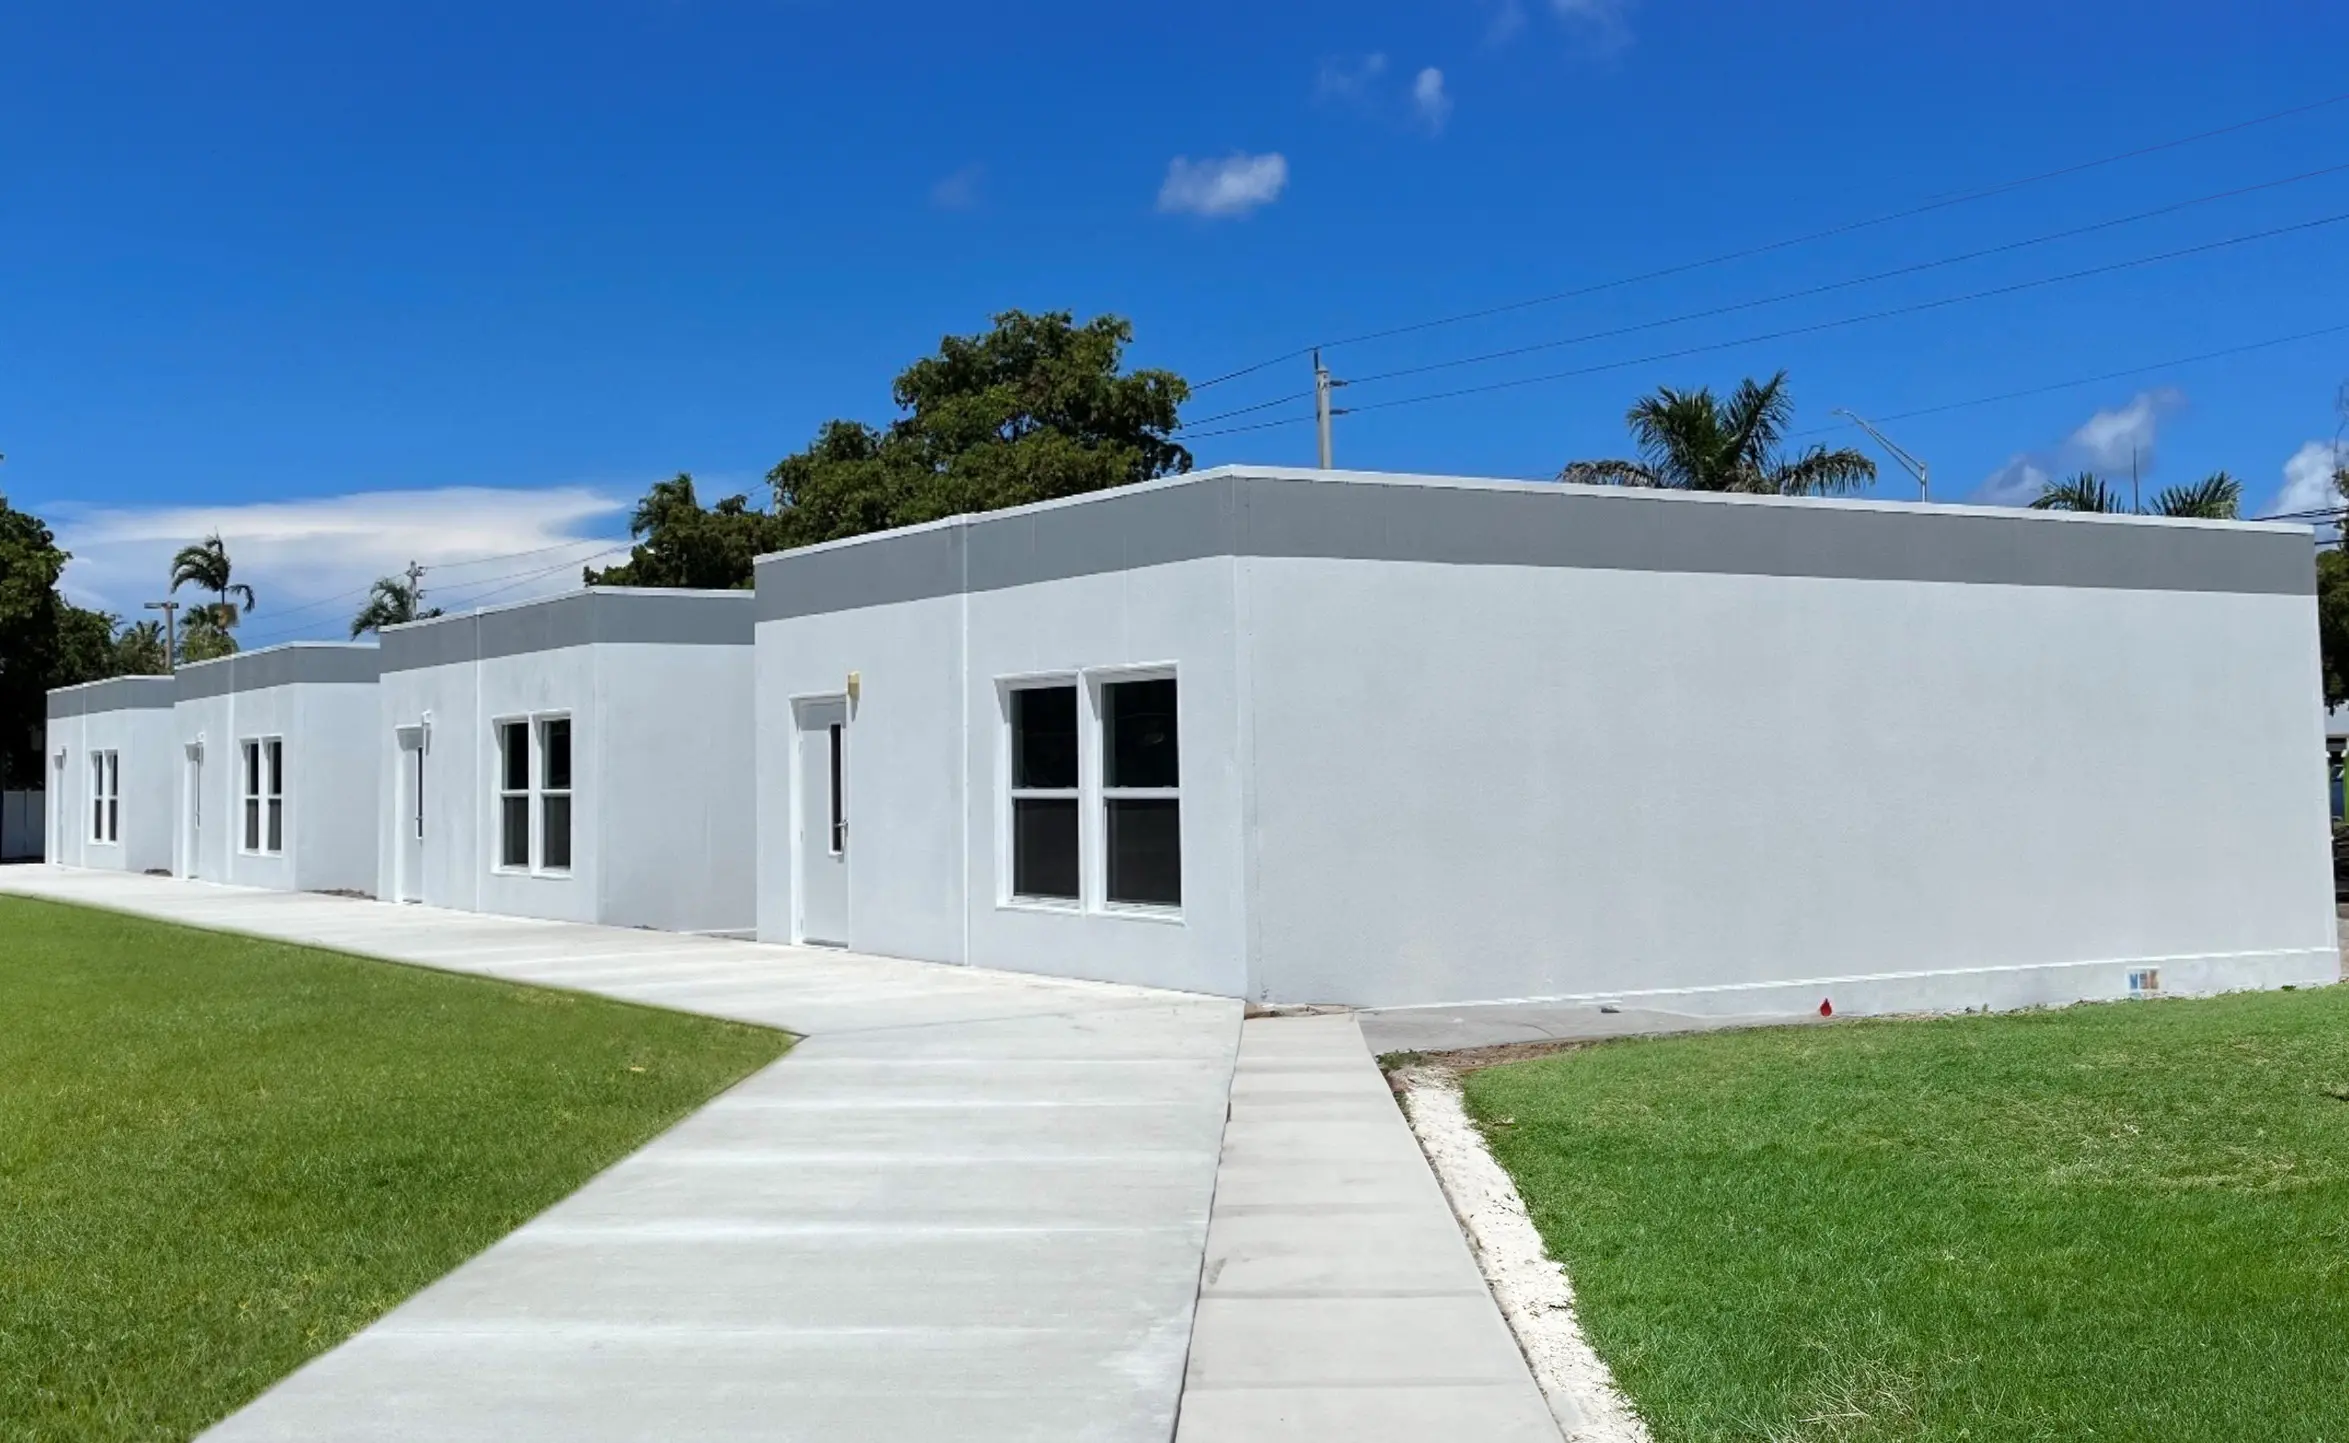 Rent Modular Buildings in Florida